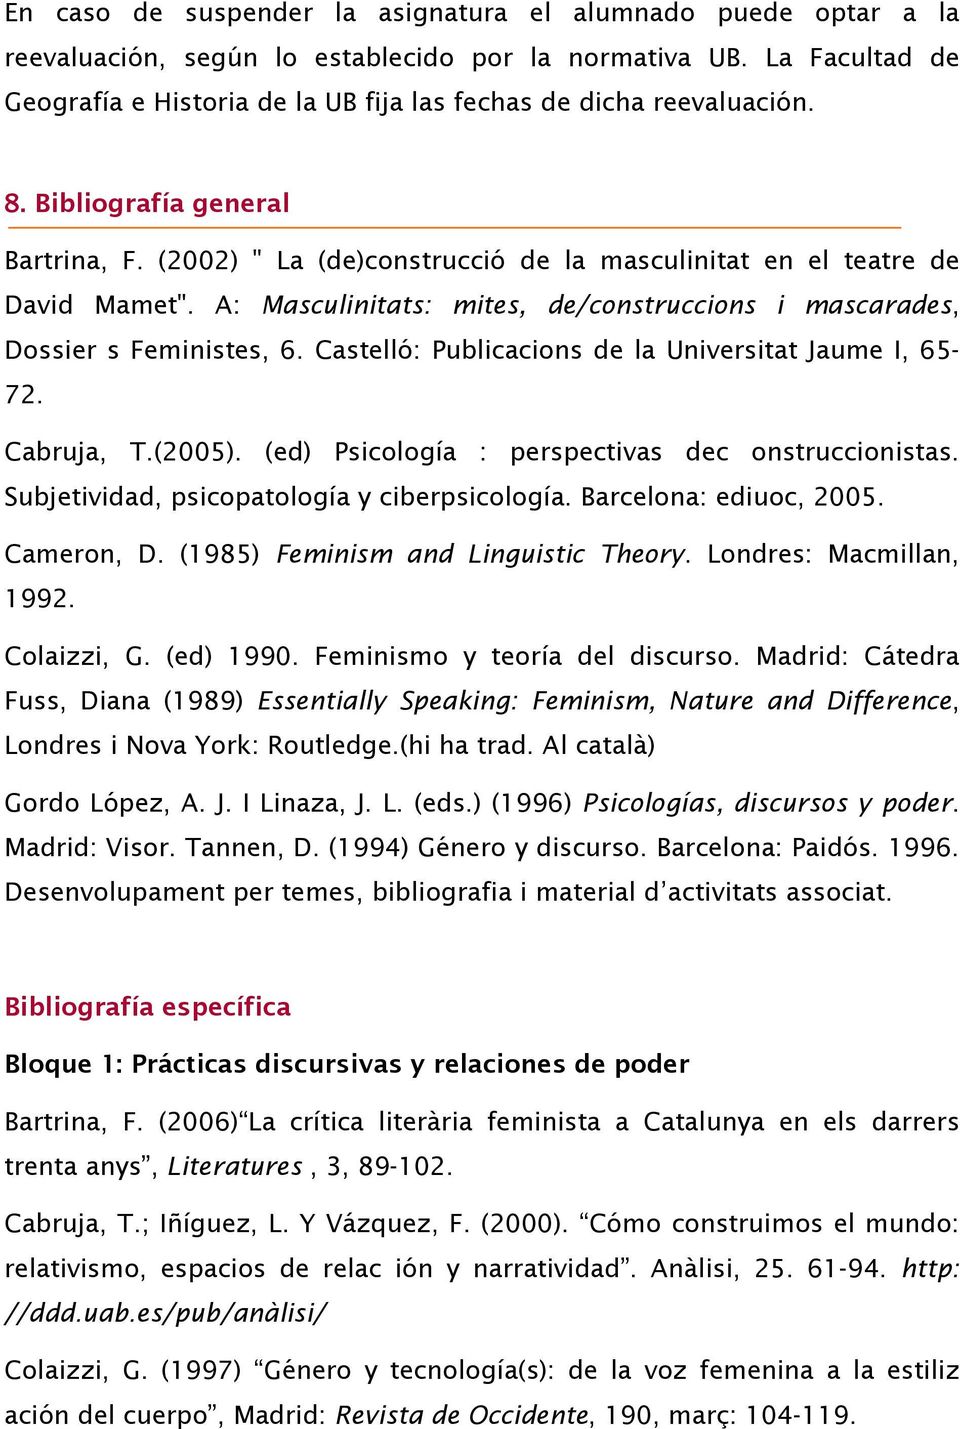 A: Masculinitats: mites, de/construccions i mascarades, Dossier s Feministes, 6. Castelló: Publicacions de la Universitat Jaume I, 65-72. Cabruja, T.(2005).